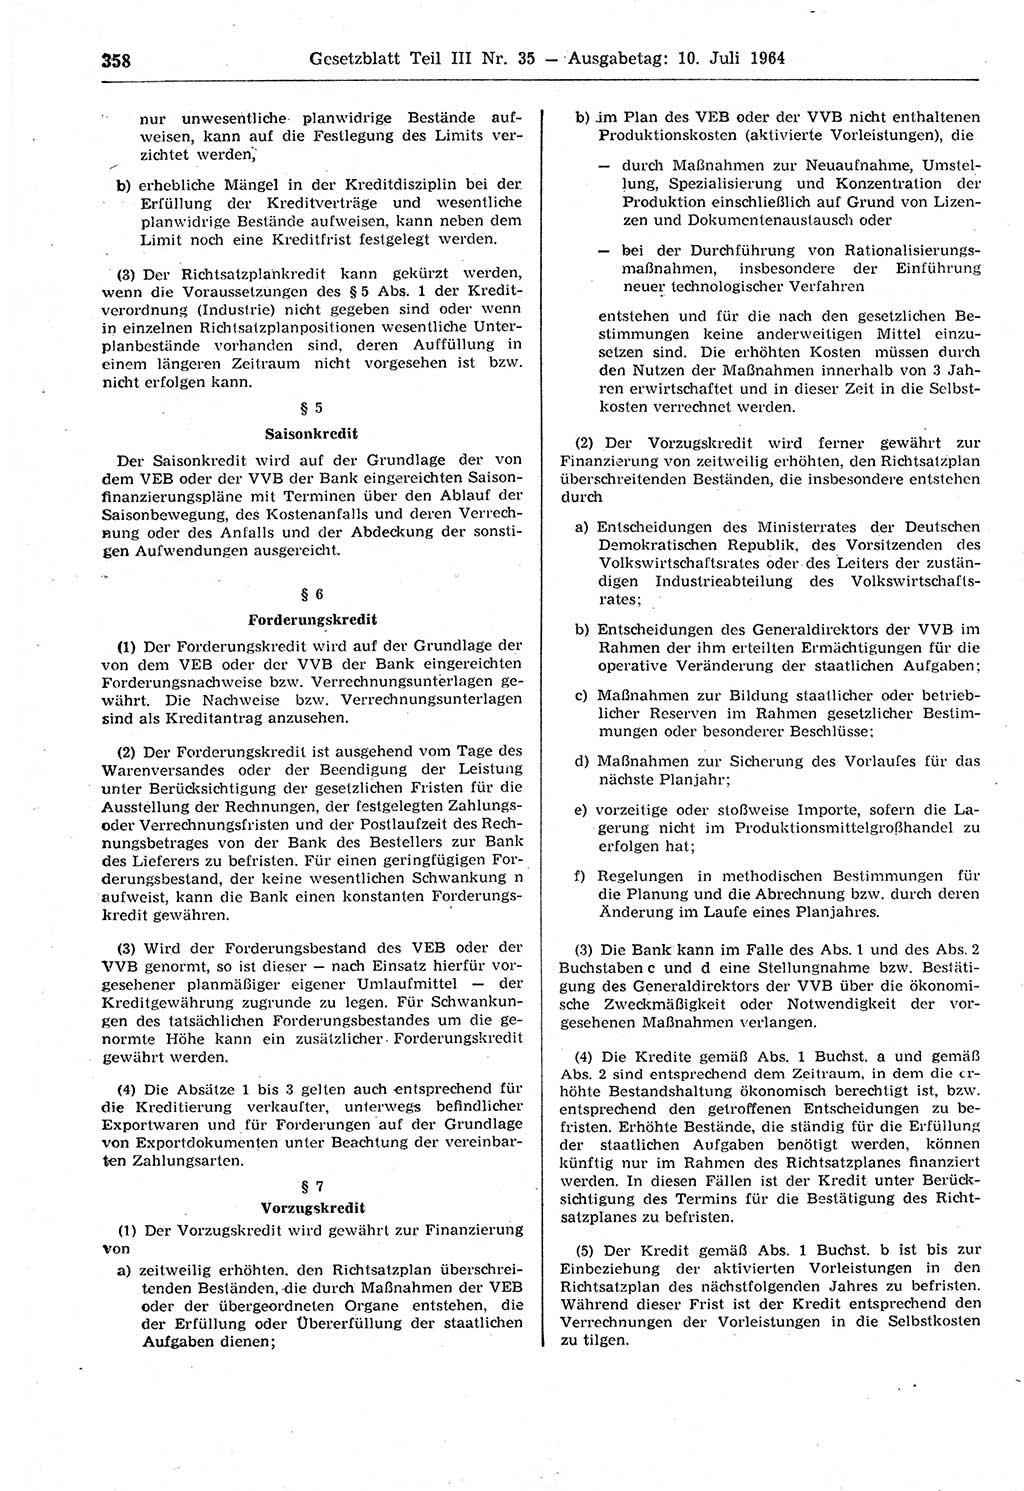 Gesetzblatt (GBl.) der Deutschen Demokratischen Republik (DDR) Teil ⅠⅠⅠ 1964, Seite 358 (GBl. DDR ⅠⅠⅠ 1964, S. 358)